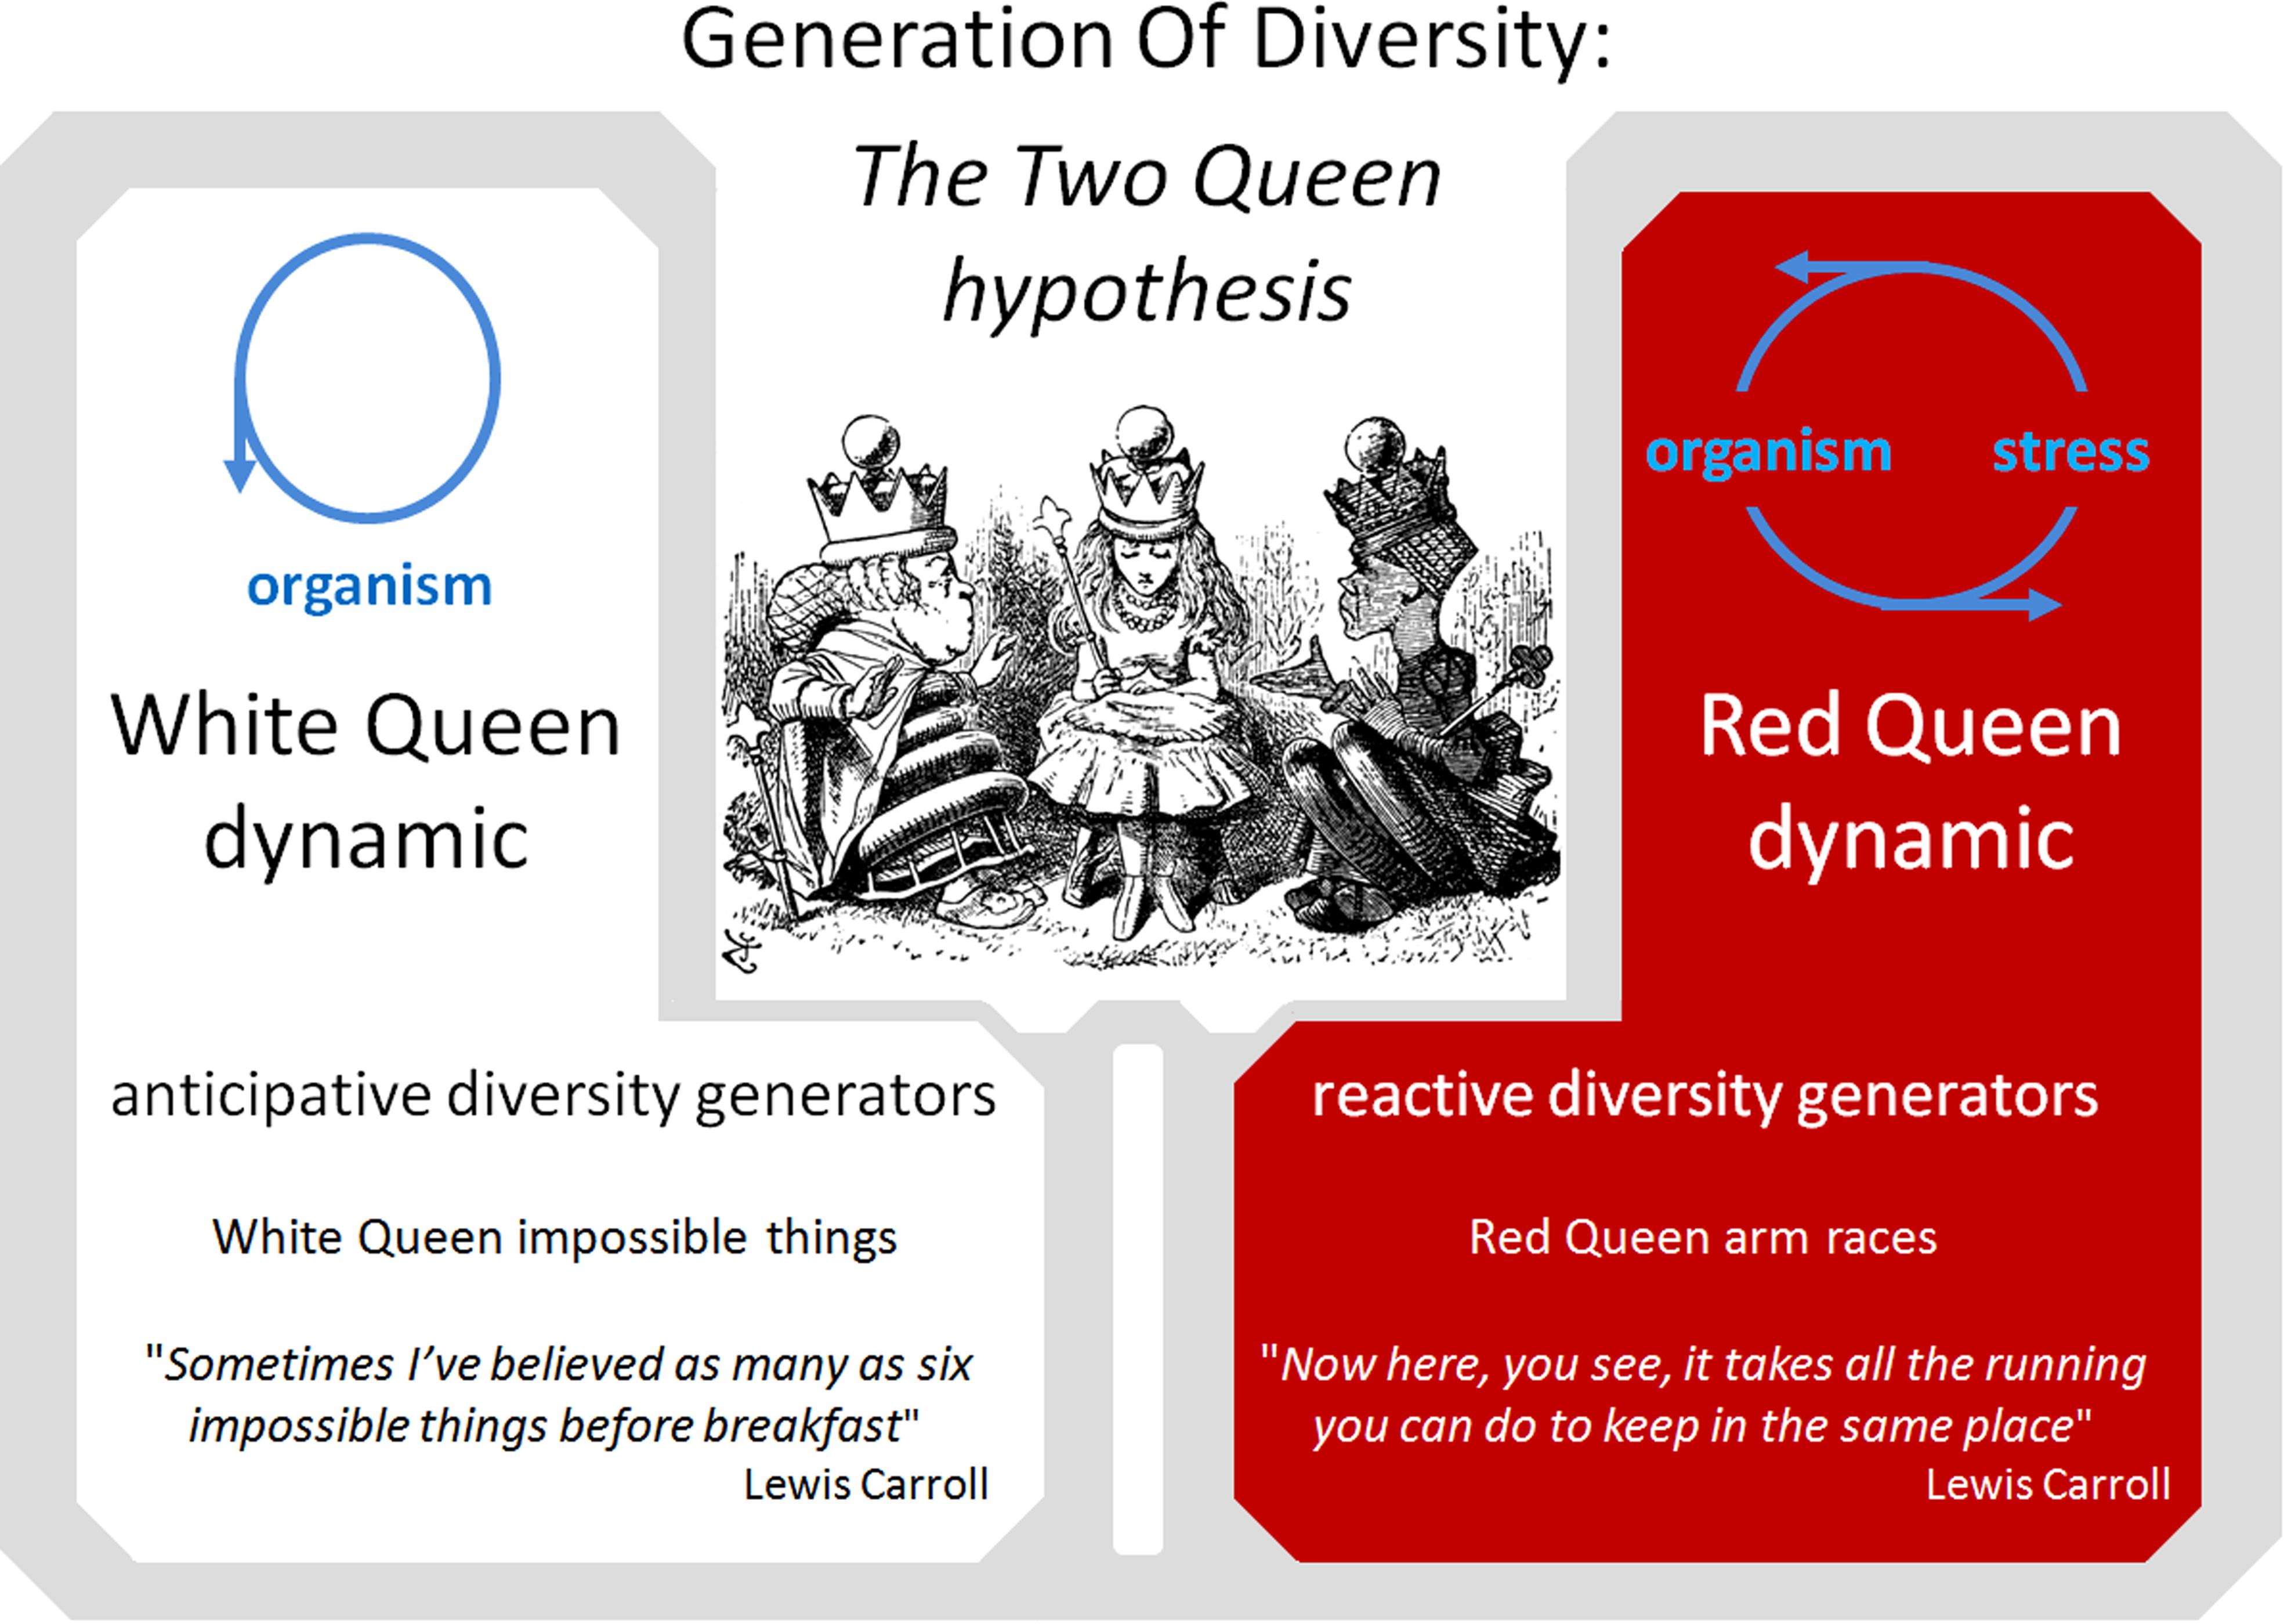 red queen hypothesis quizlet